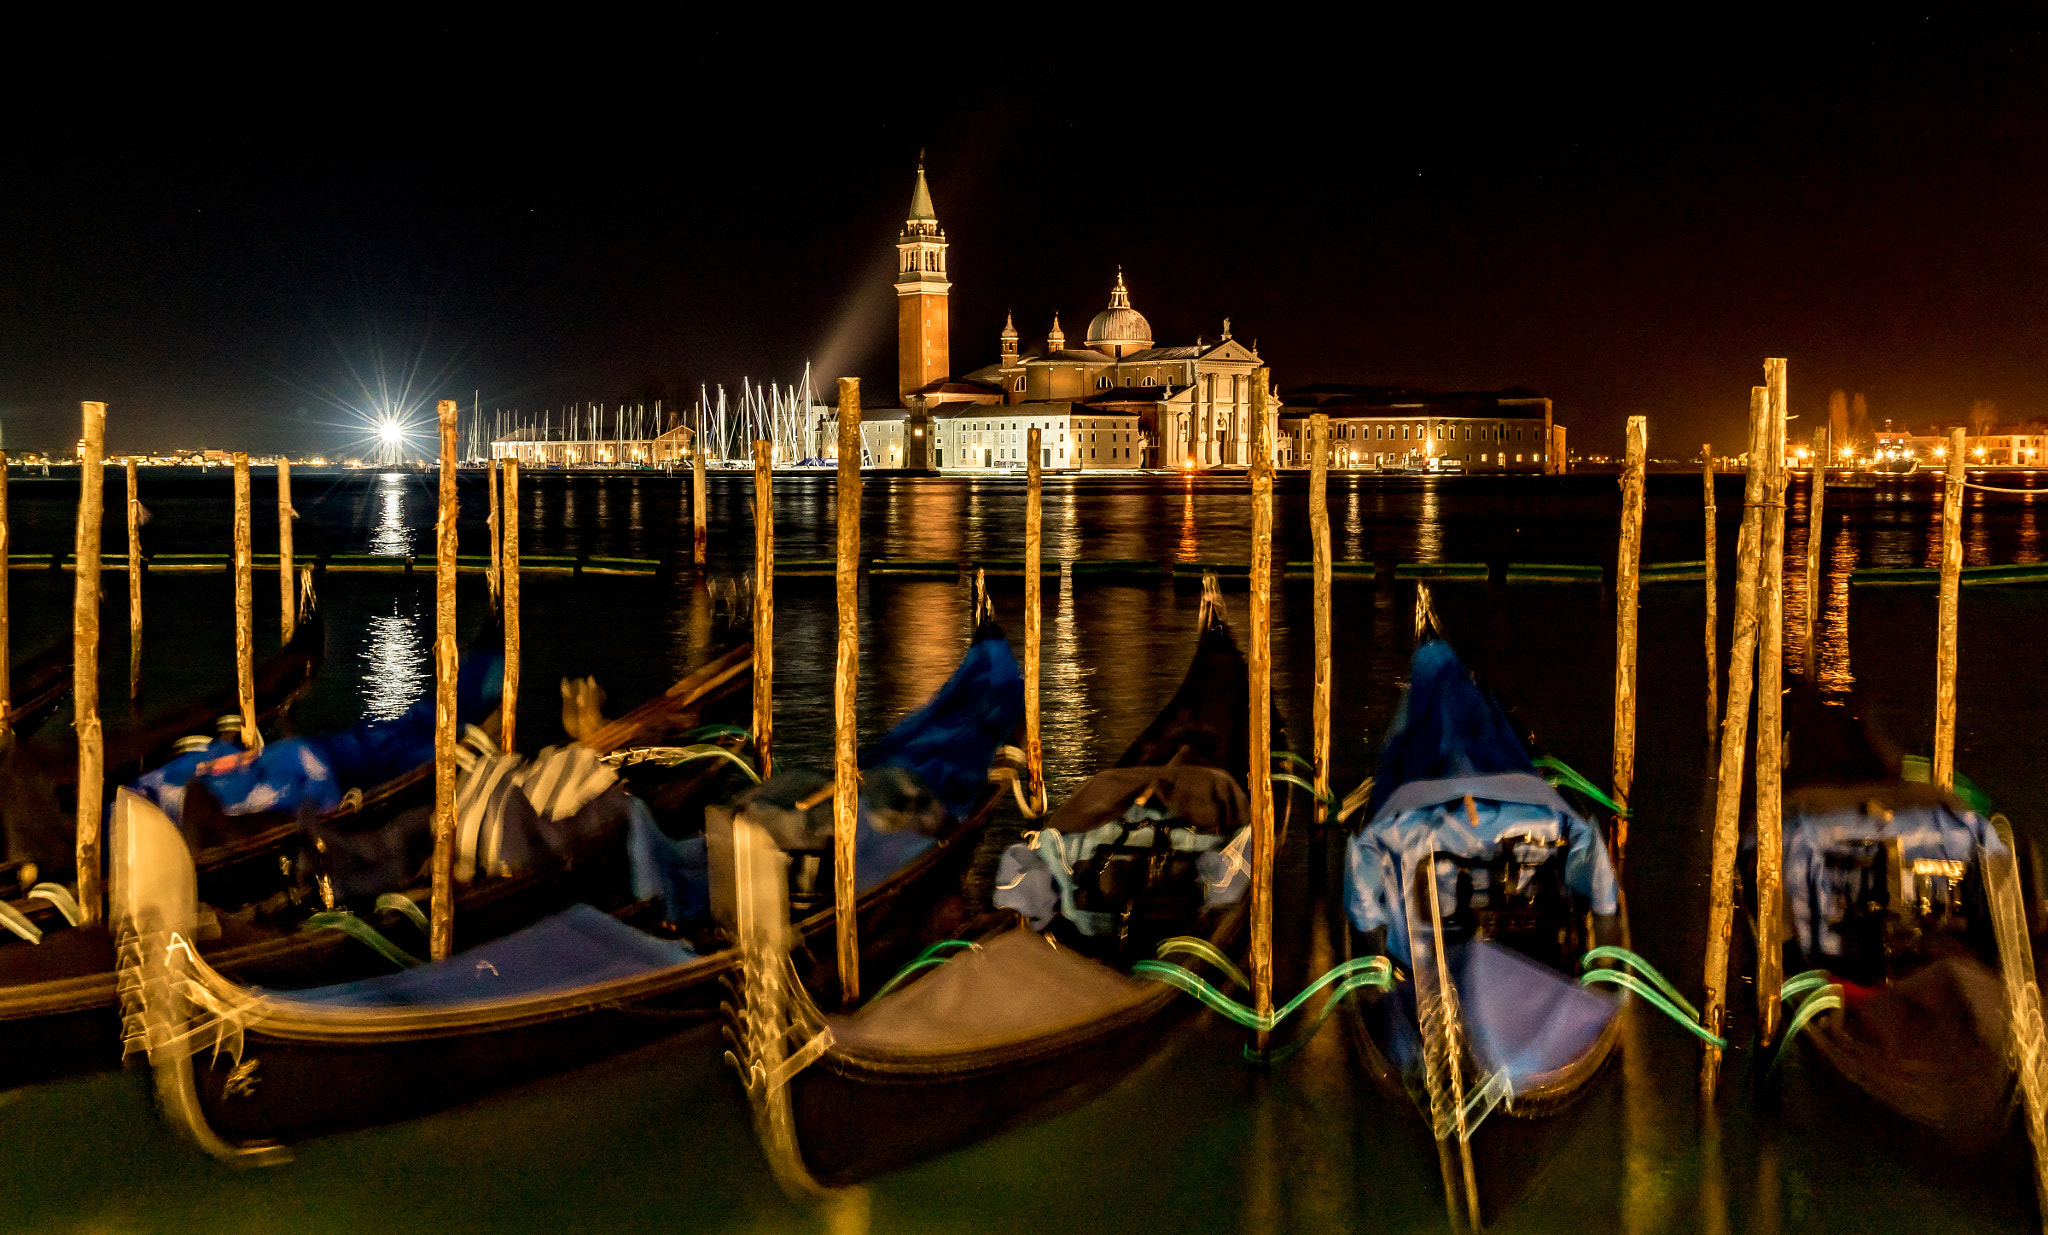 Sony a7R sample photo. Venetian gondolas at night photography